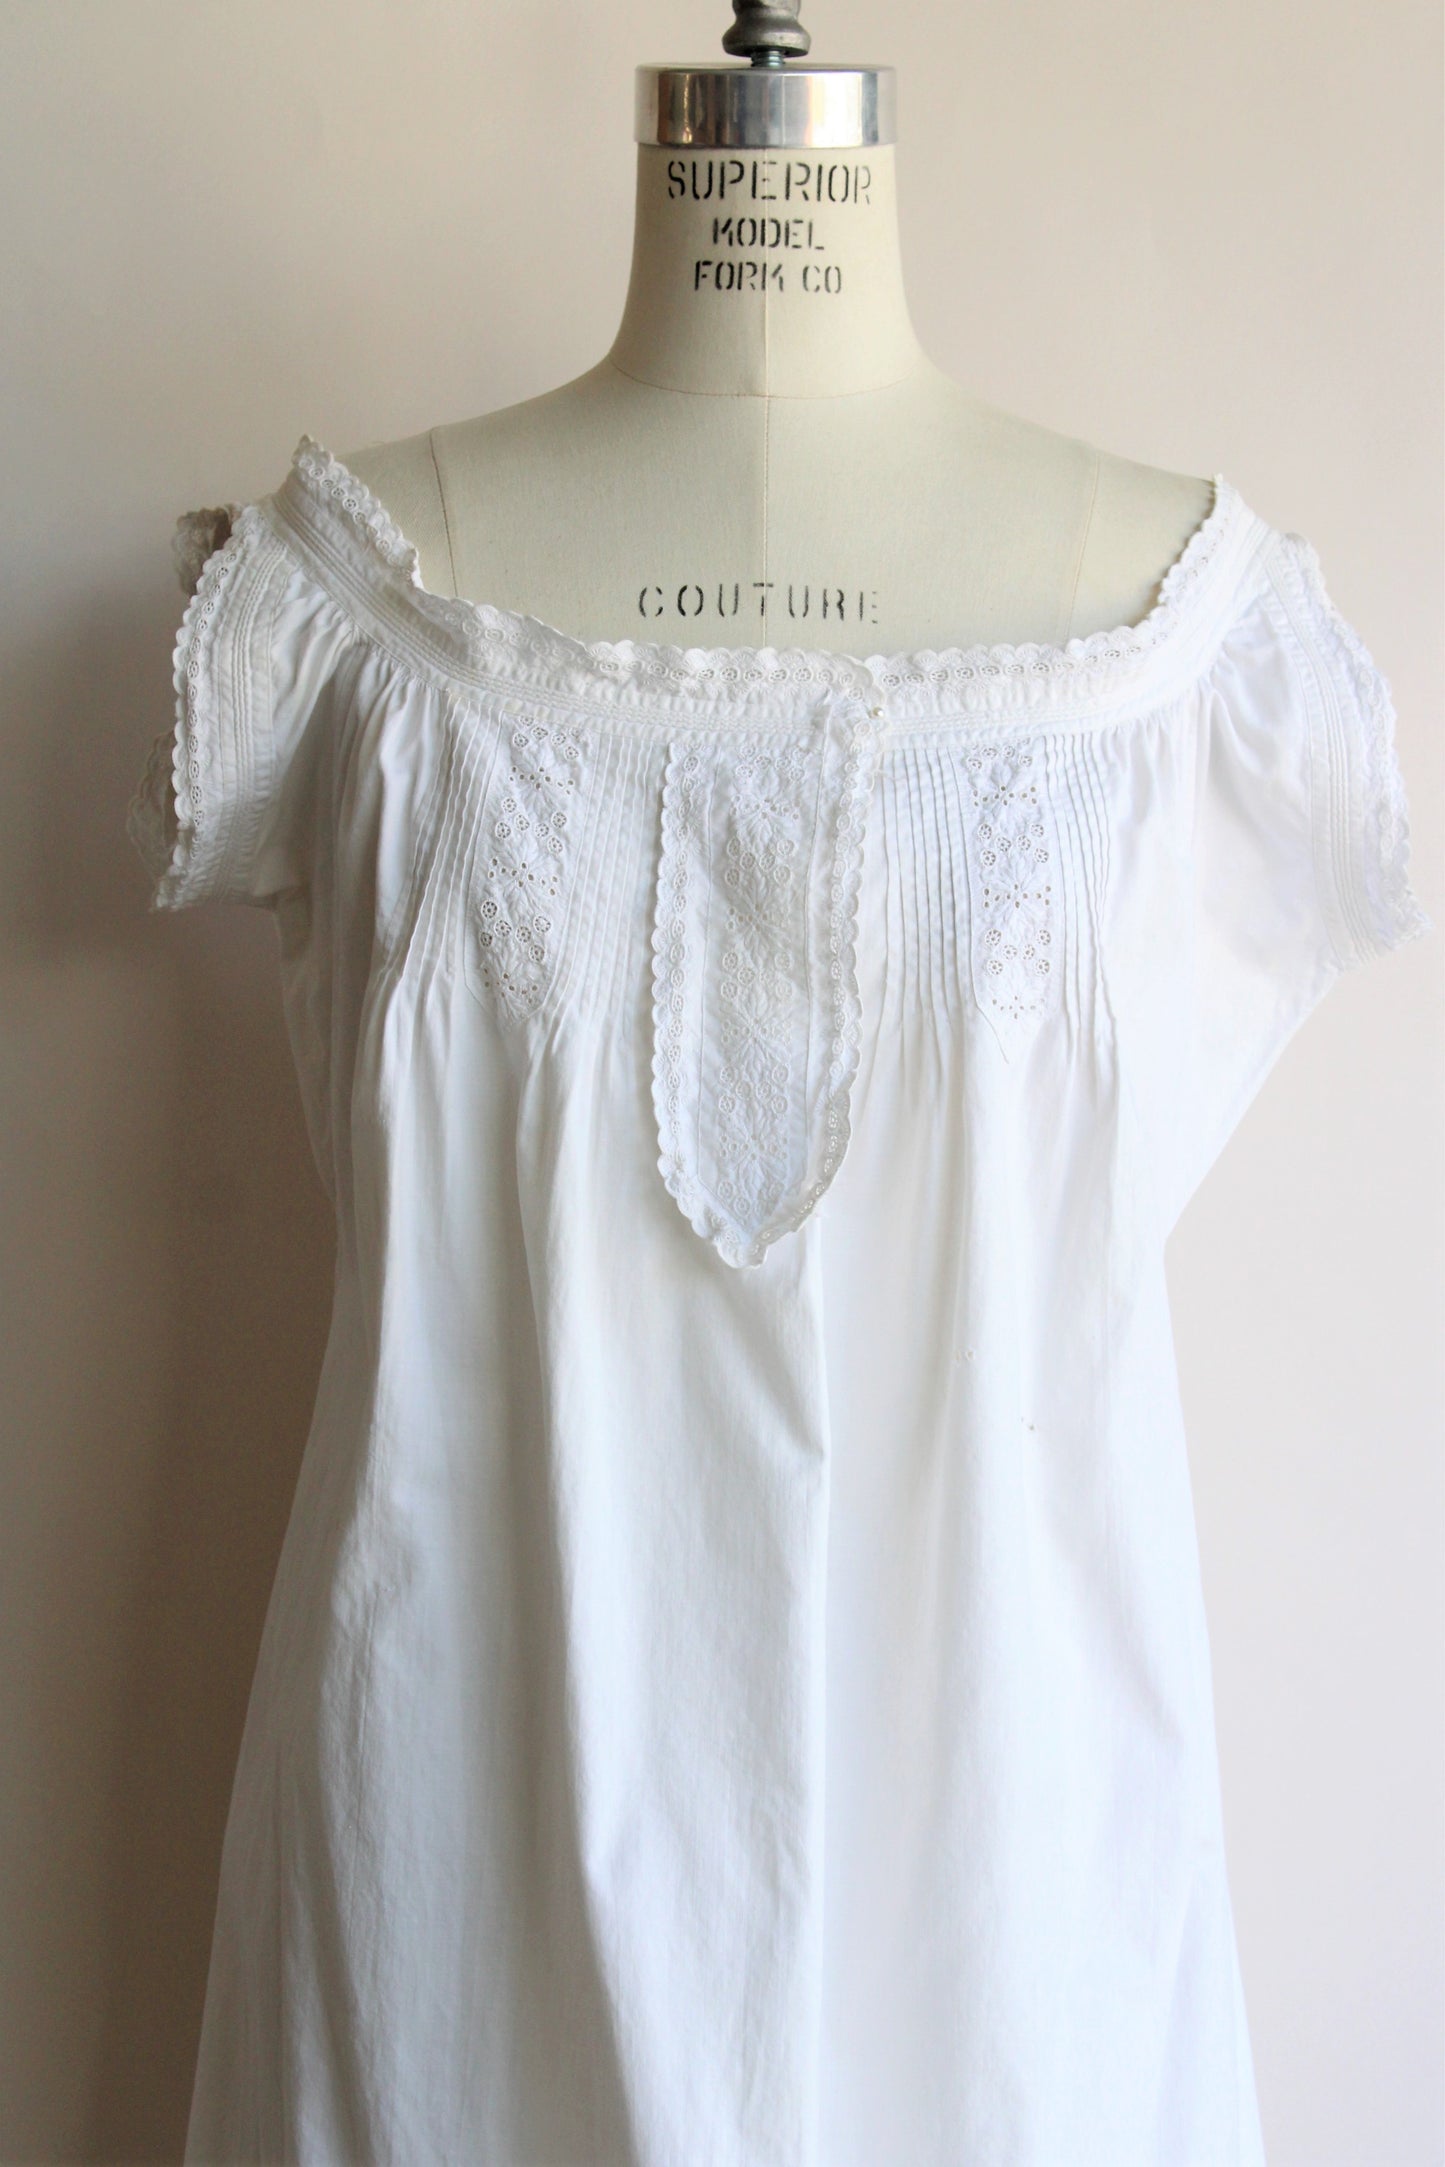 Antique White Cotton Nightgown